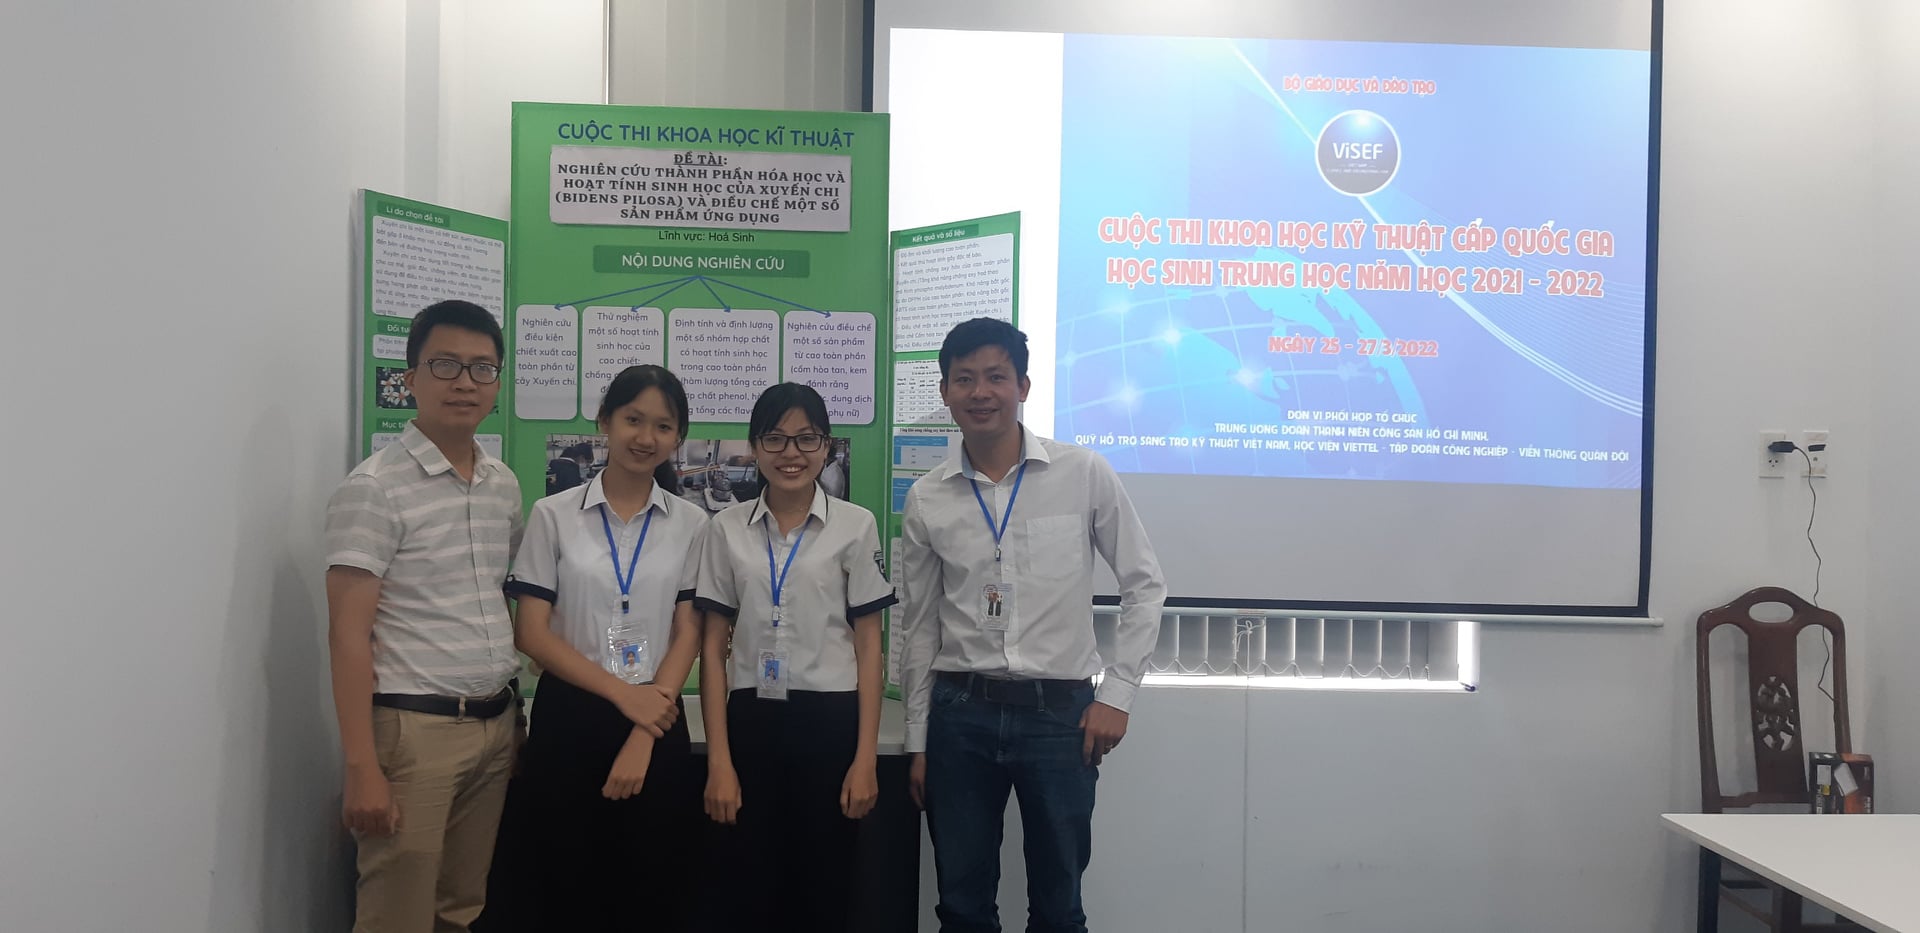 Hồ Thị Diệu Na và Lê Thị Như Ý tham dự Cuộc thi Khoa học kỹ thuật cấp Quốc gia năm học 2021 - 2022